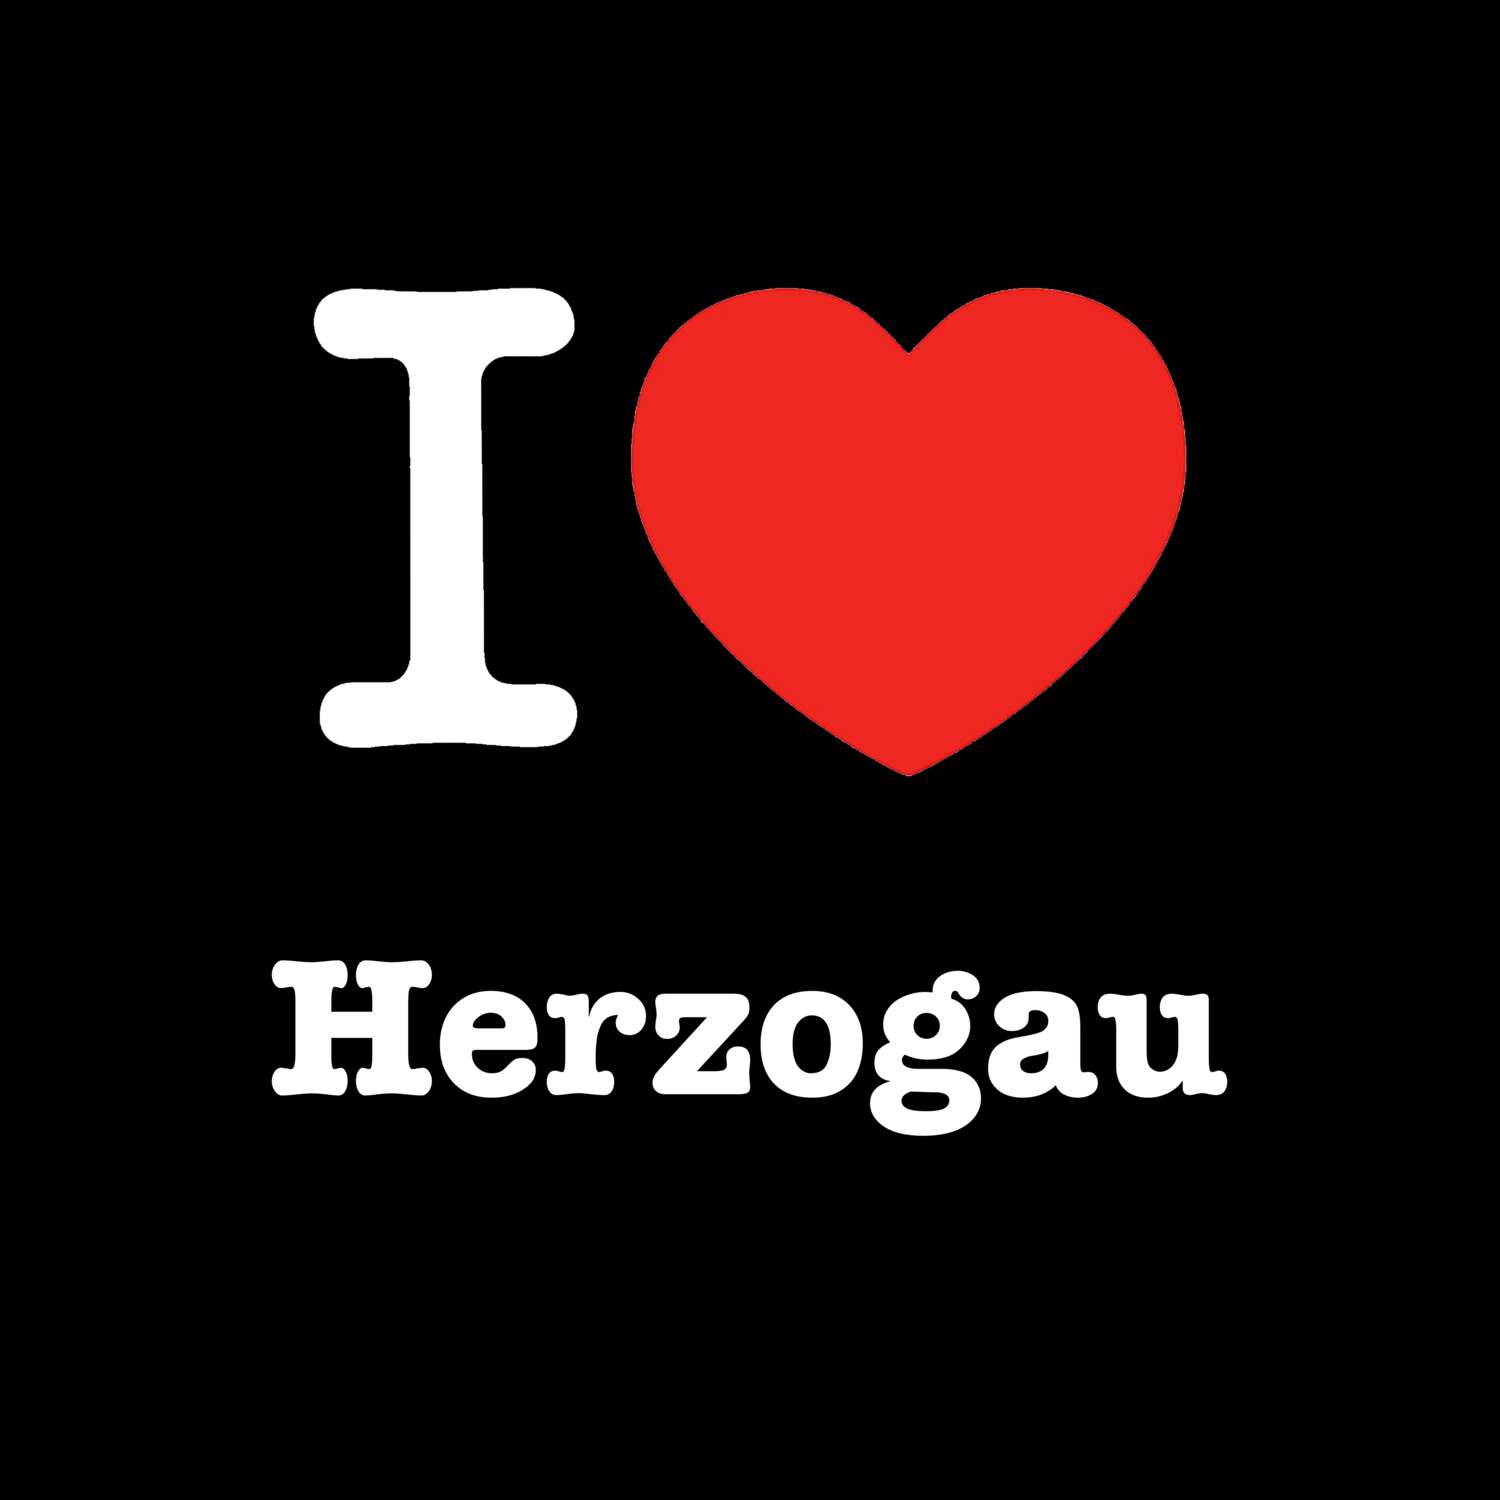 Herzogau T-Shirt »I love«